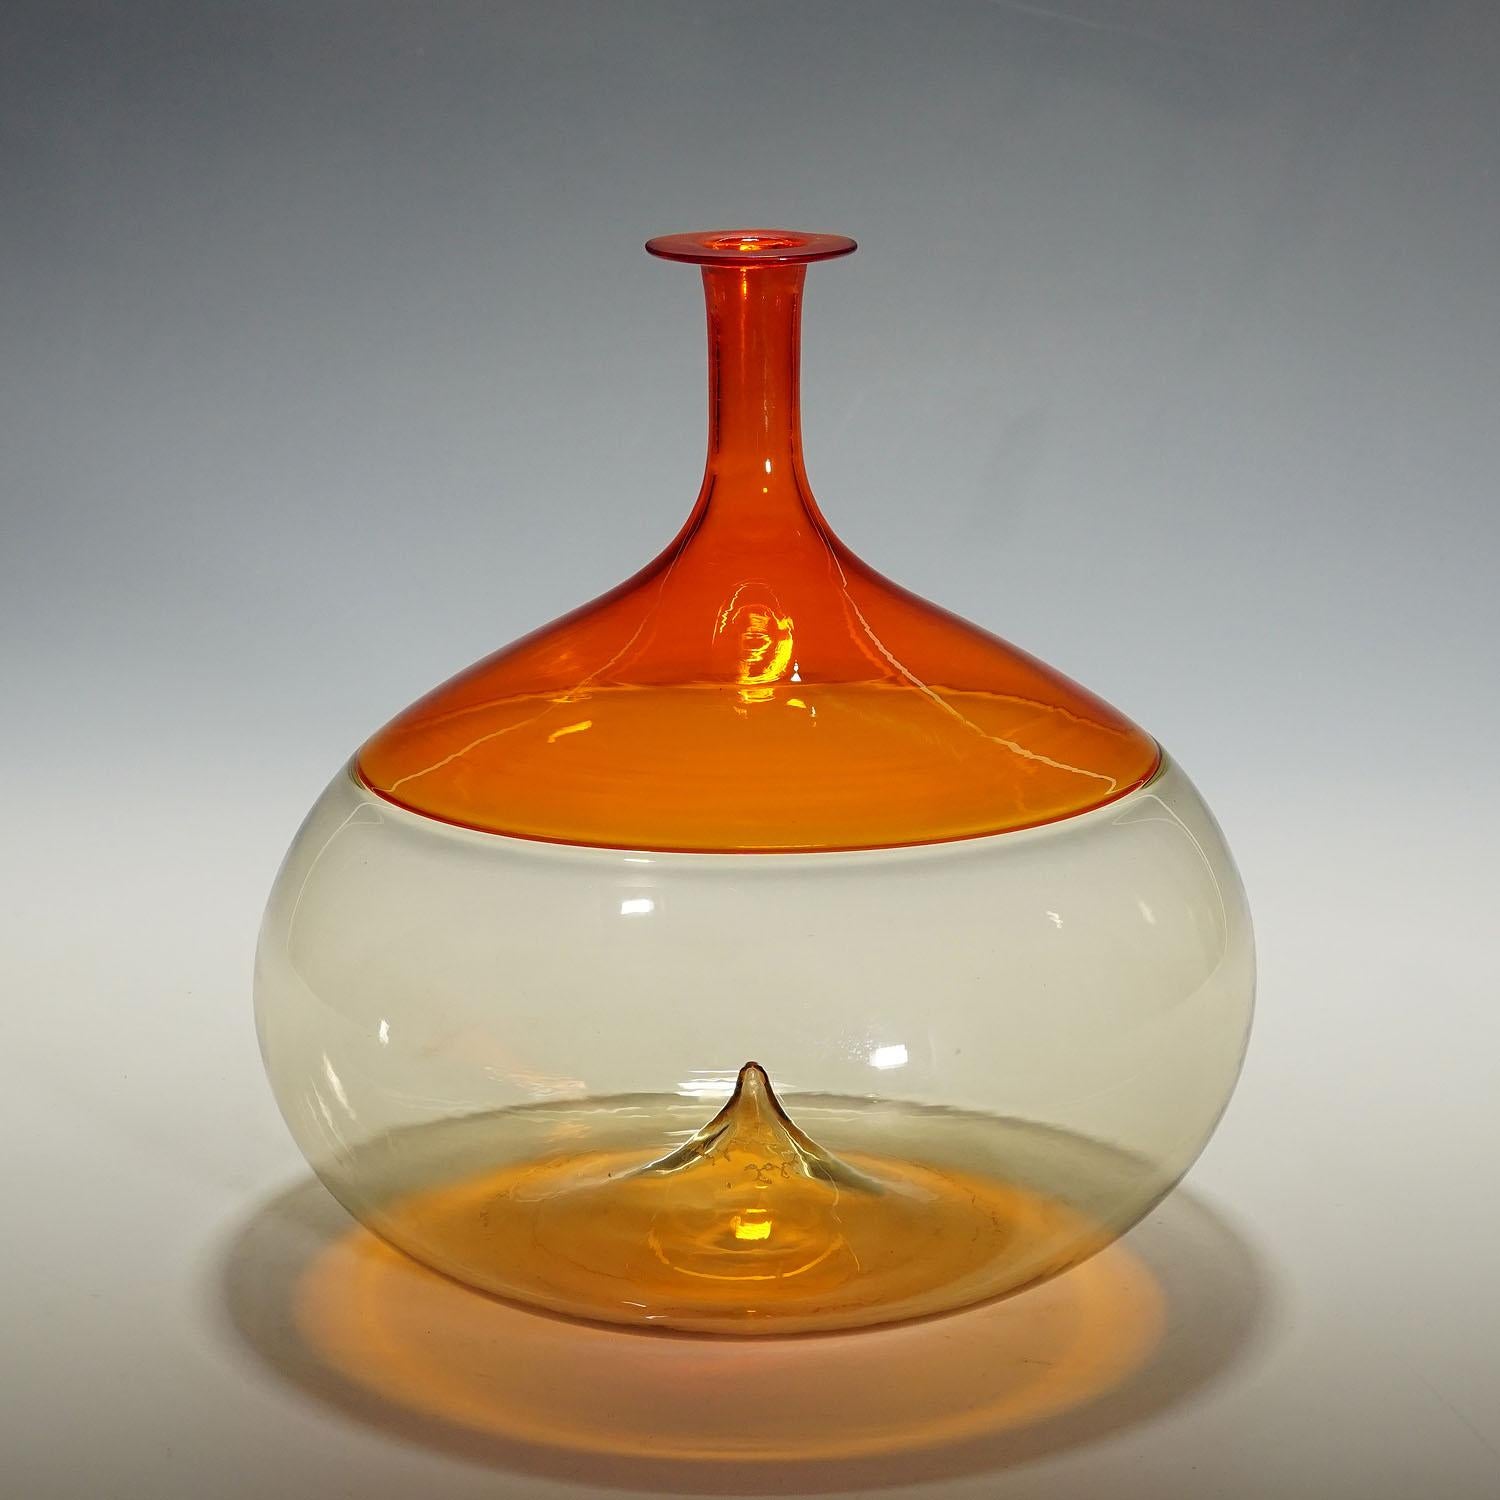 Vintage Murano Kunstglasvase 'Bolle' von Tapio Wirkkala für Venini

Vintage-Vase aus Kunstglas aus der Serie 